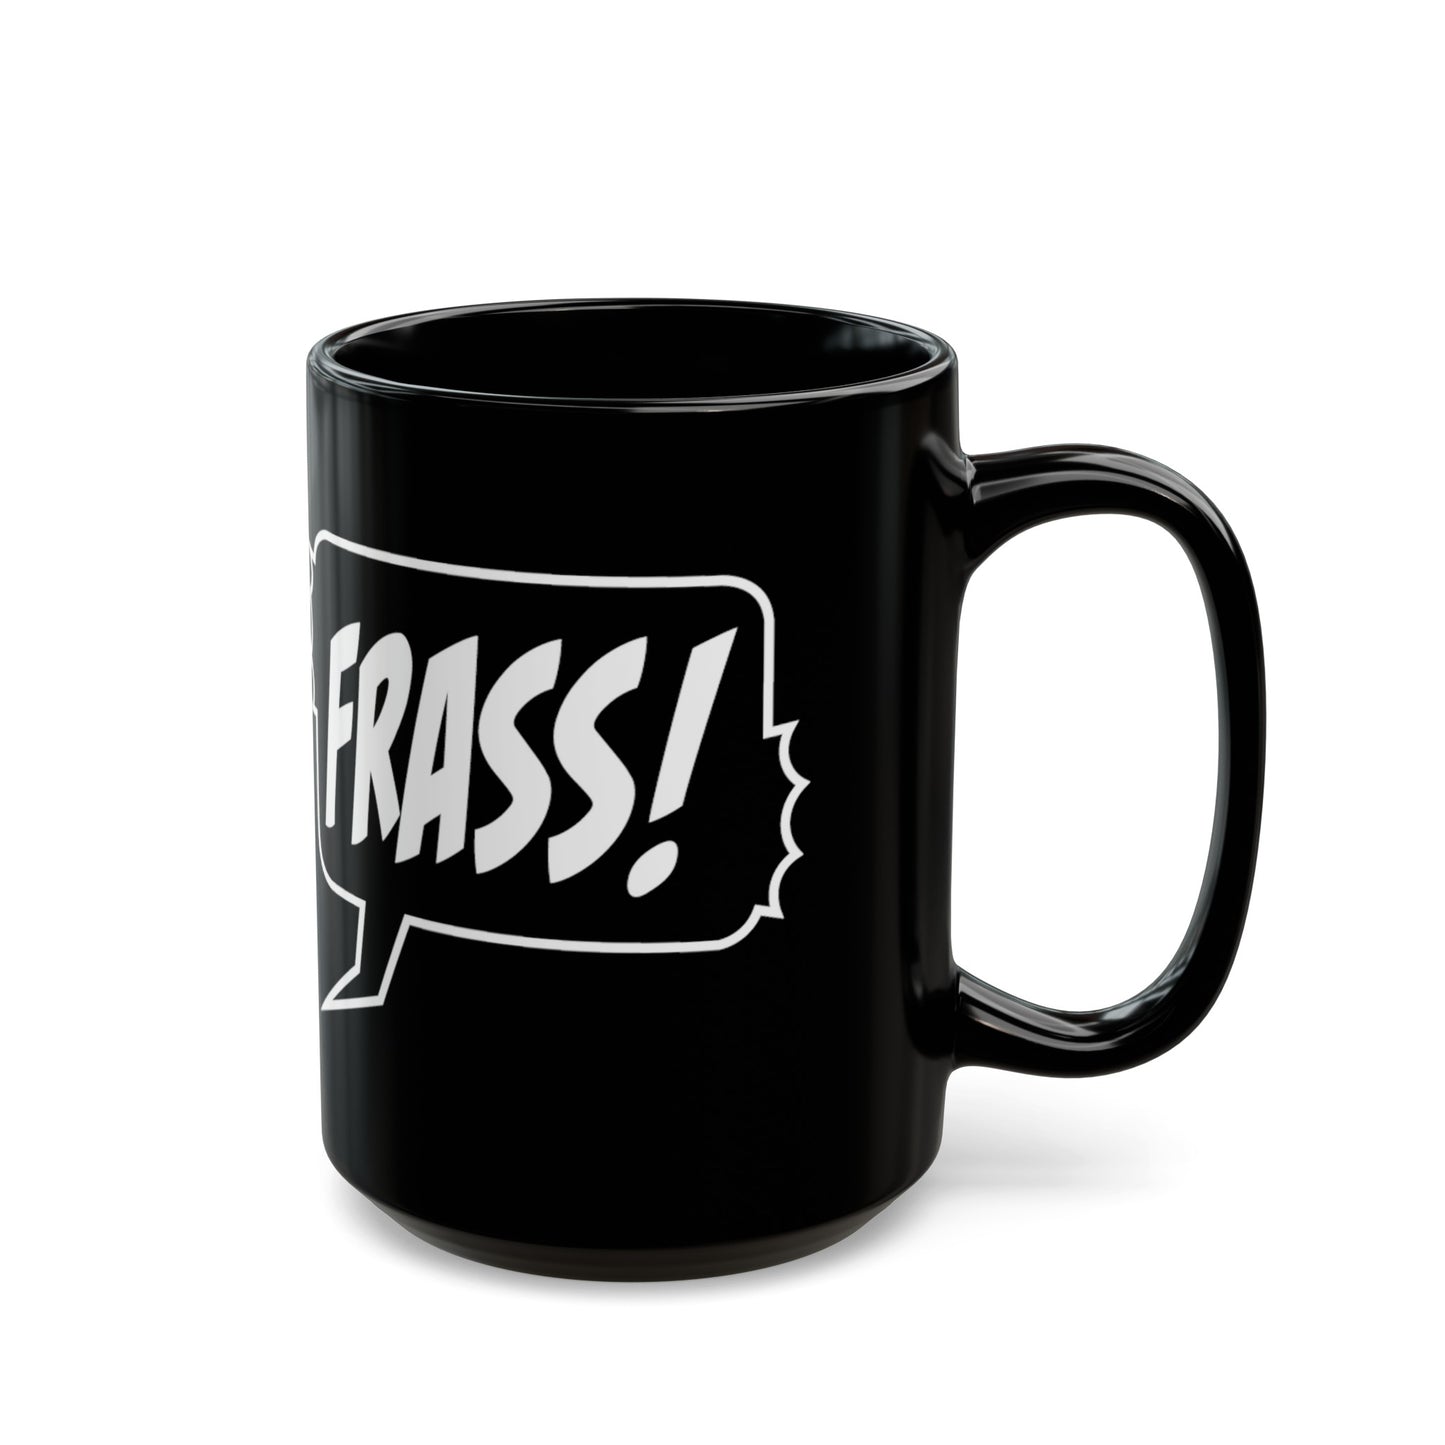 Frass! Mug (15oz)